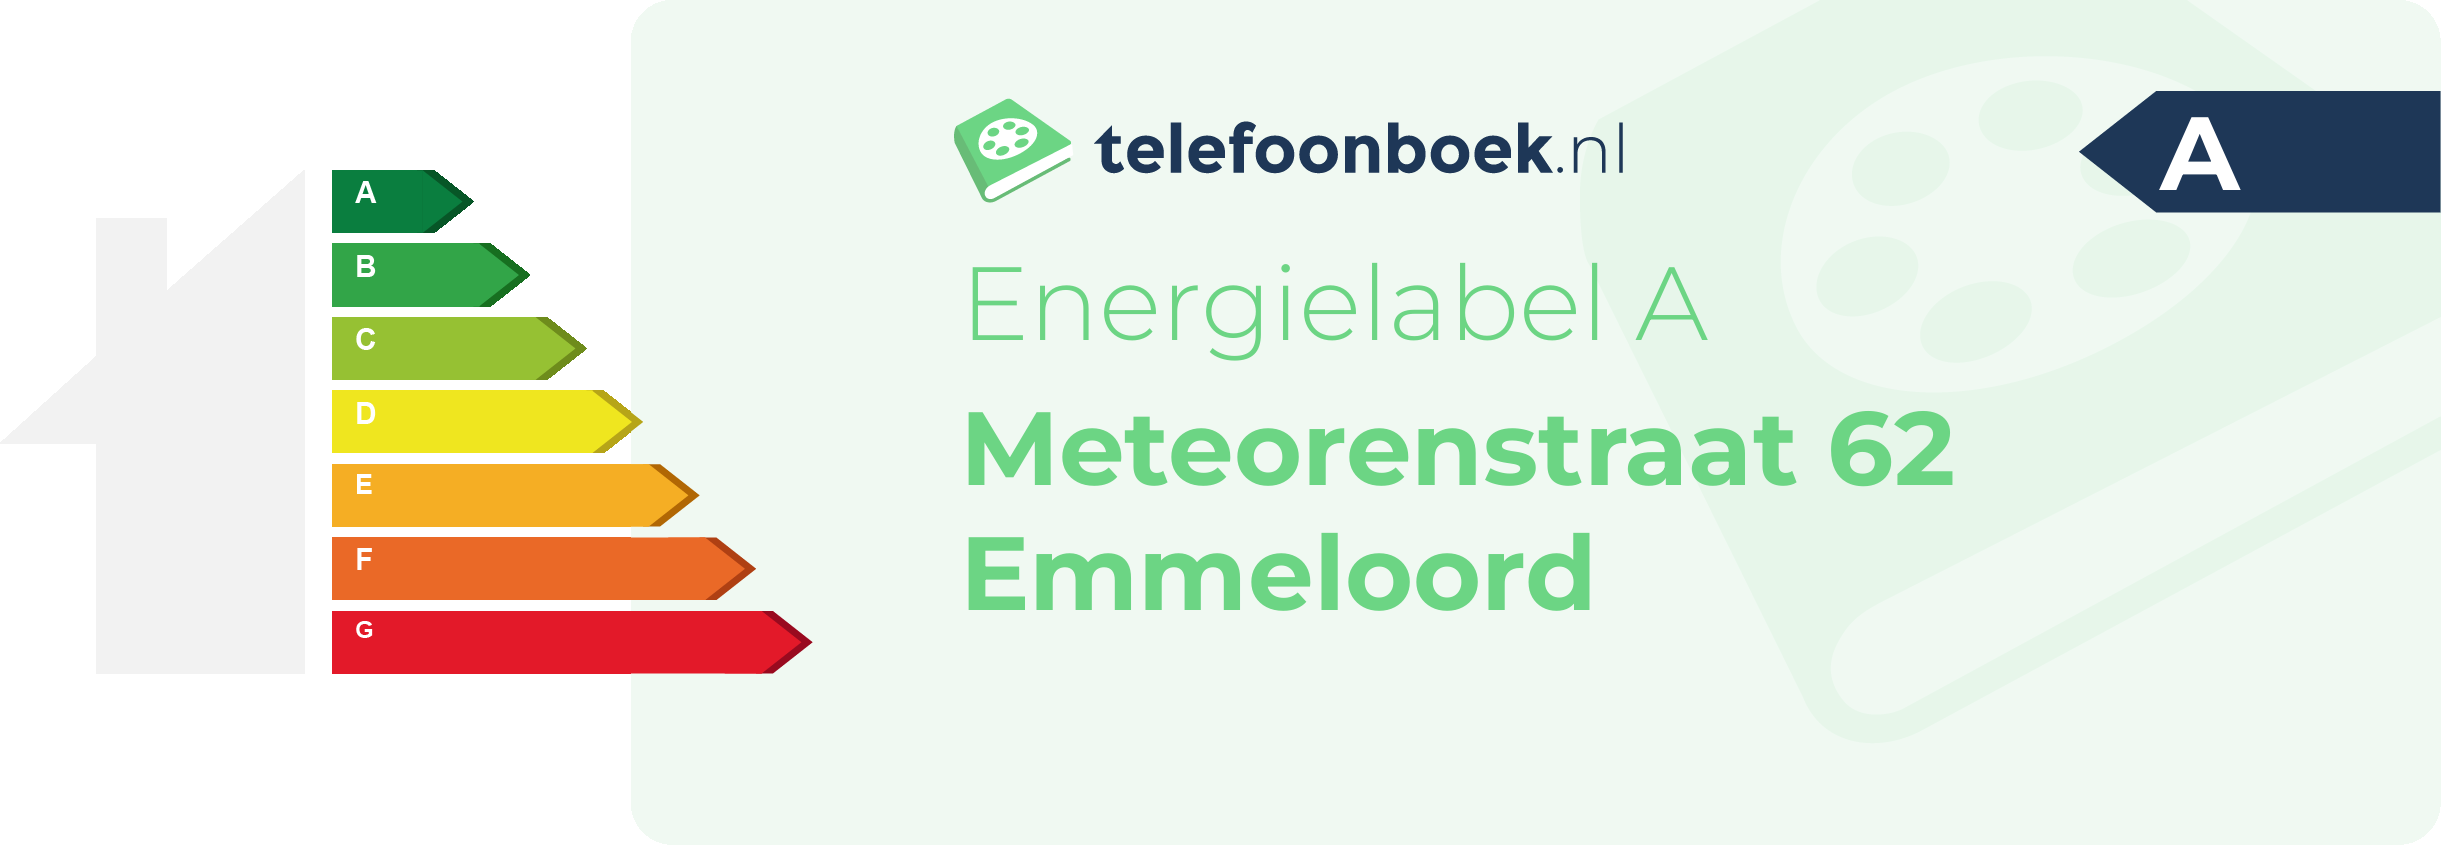 Energielabel Meteorenstraat 62 Emmeloord